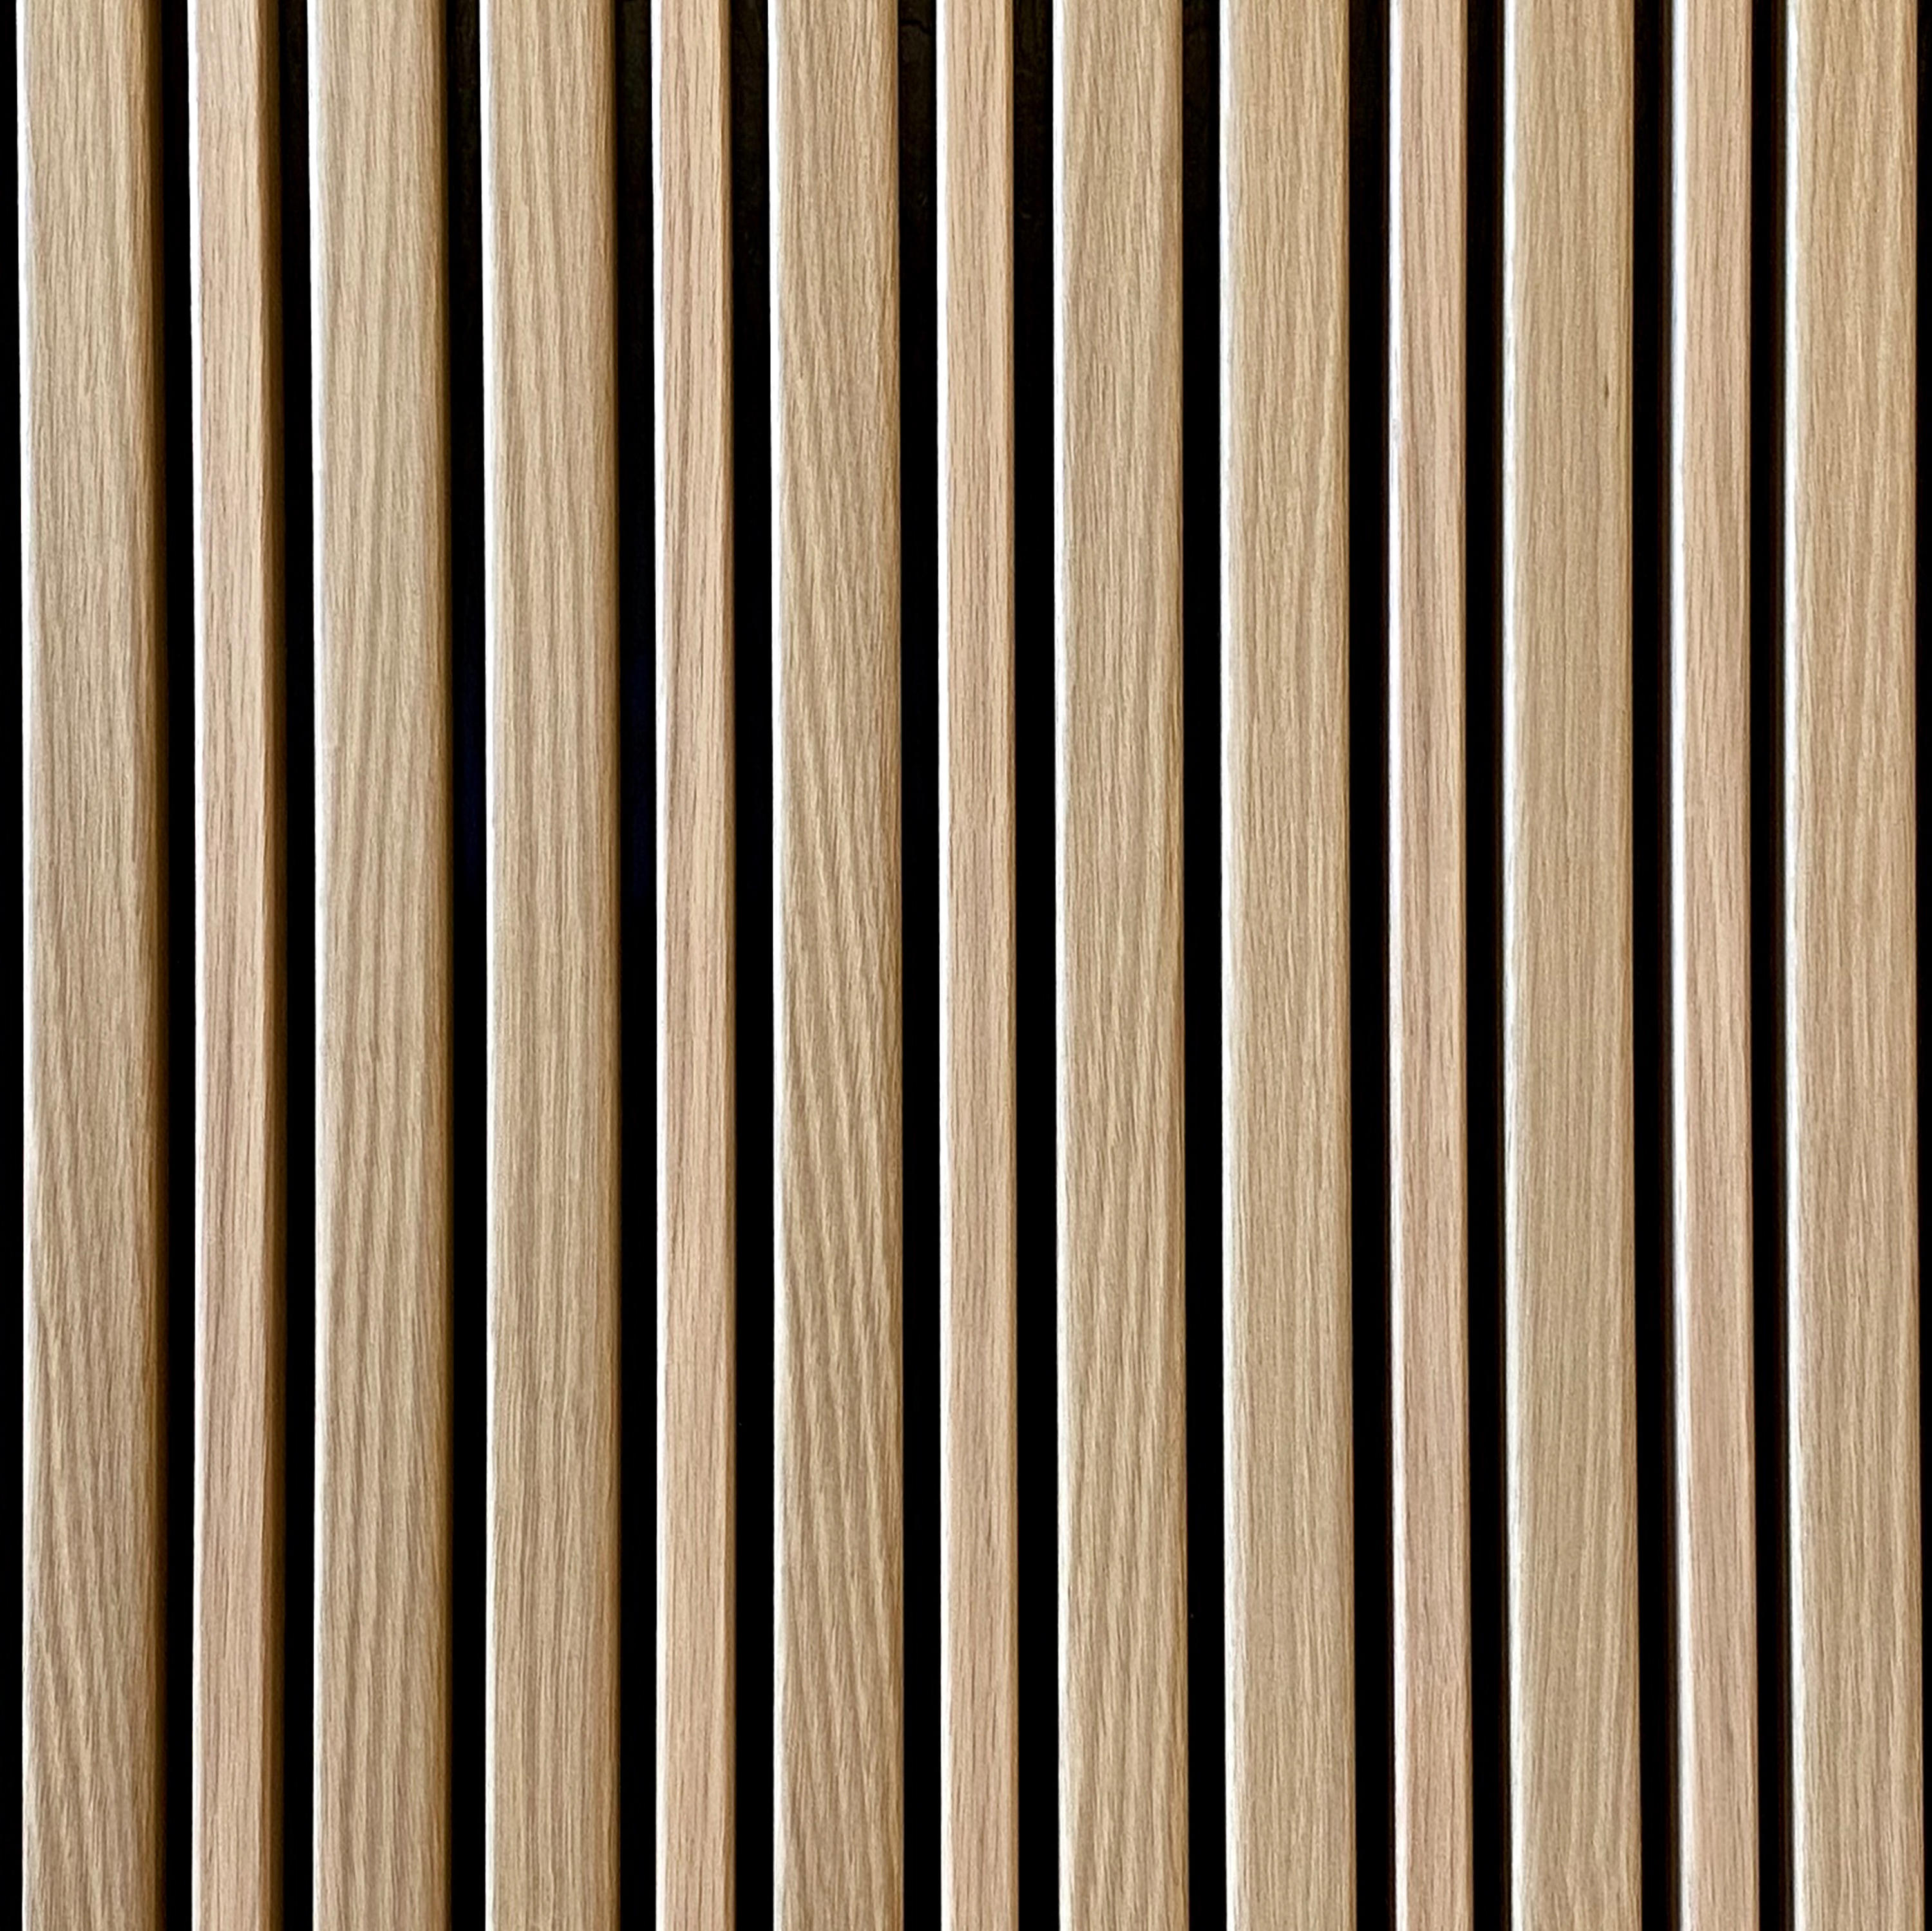 wood veneers